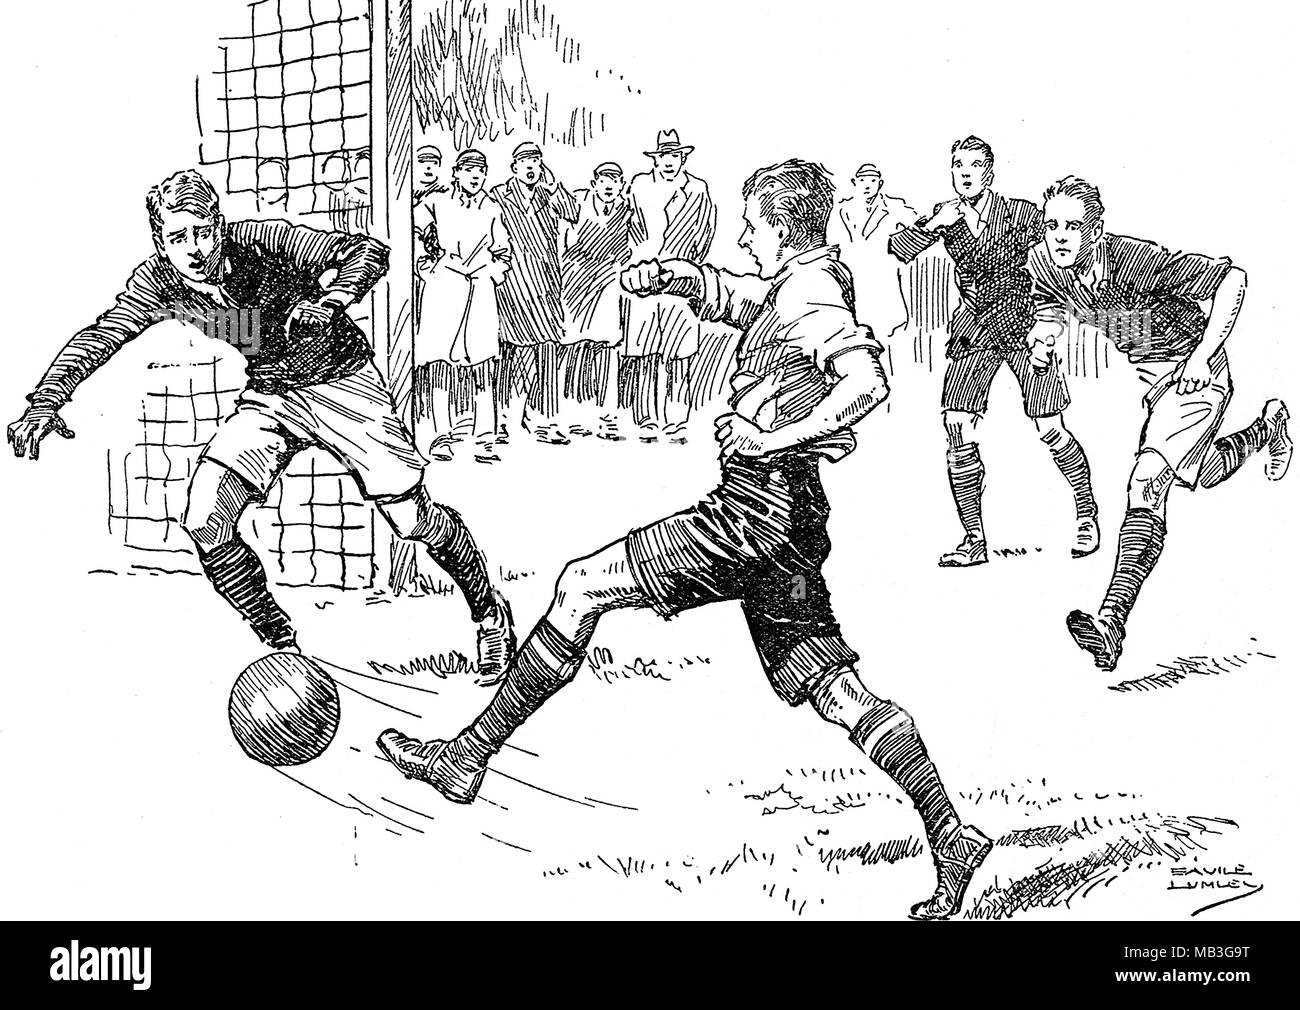 Dibujo de un partido de fútbol inglés ficticio con el jugador marcó un gol Foto de stock